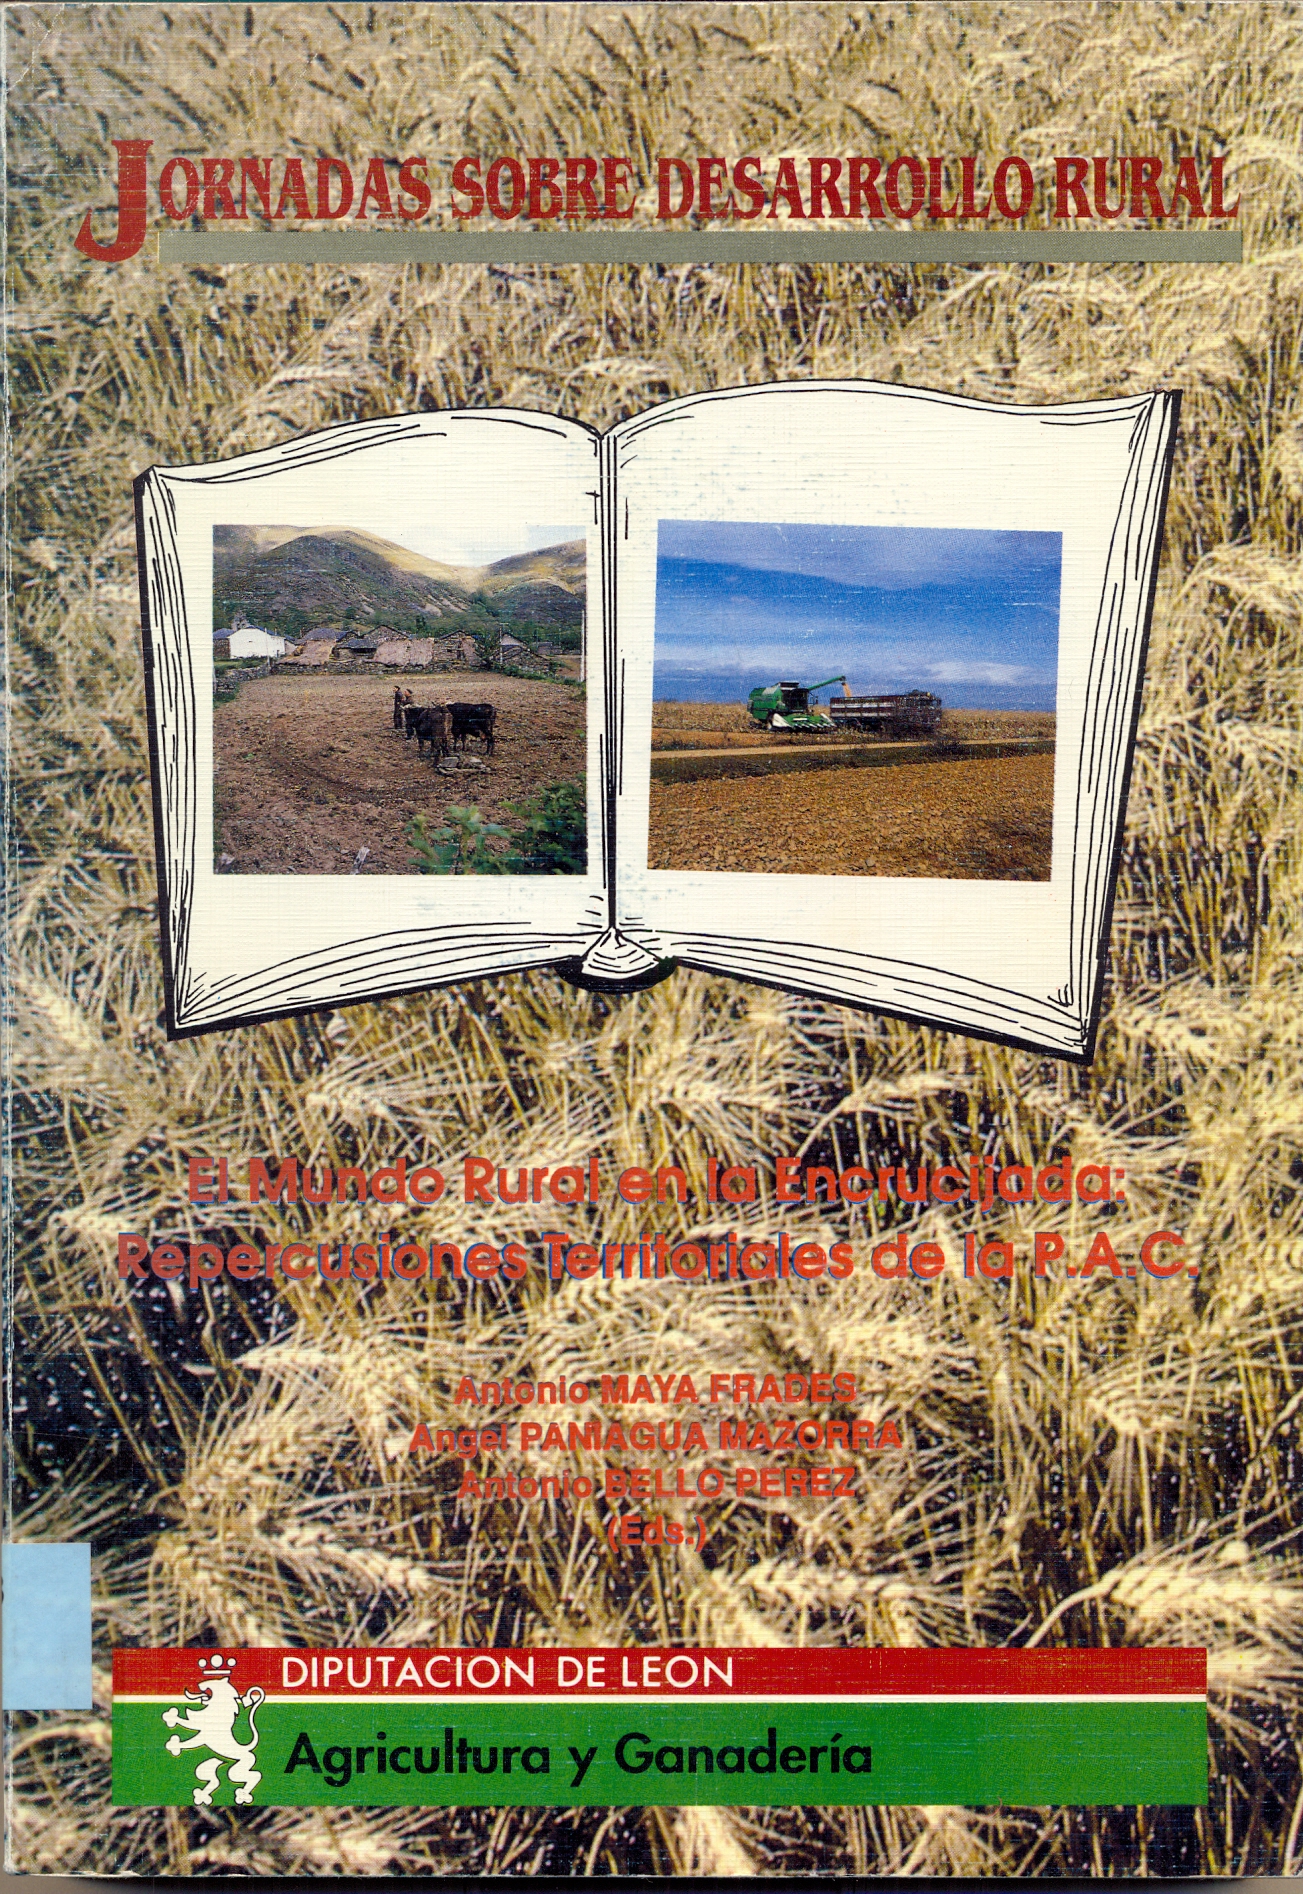 Imagen de portada del libro Jornadas sobre desarrollo rural